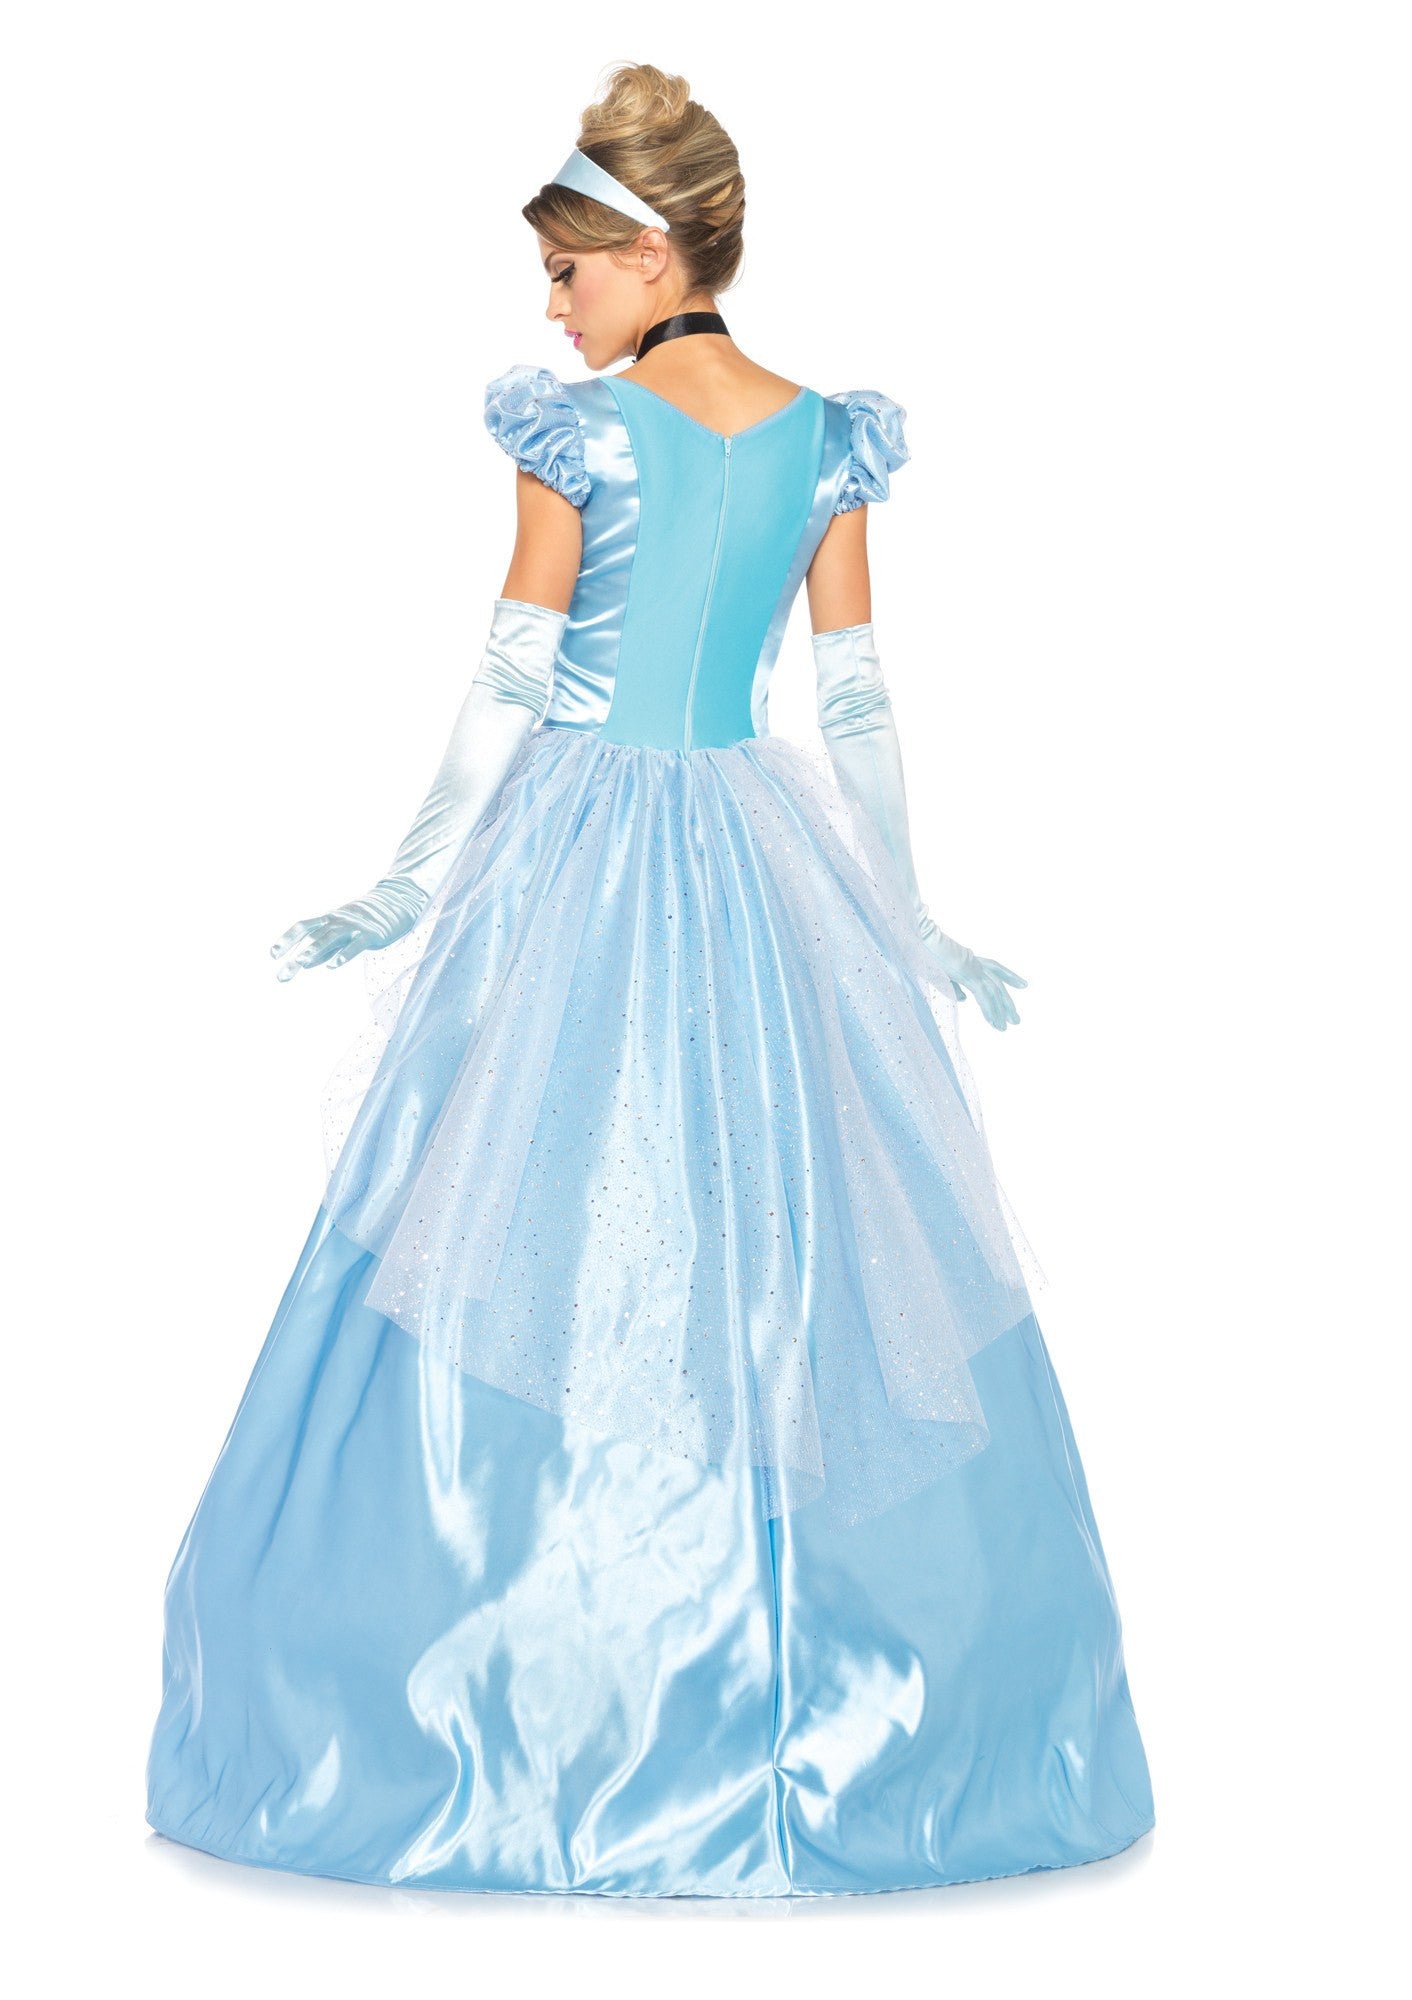 Costume - Classic Cinderella Costume